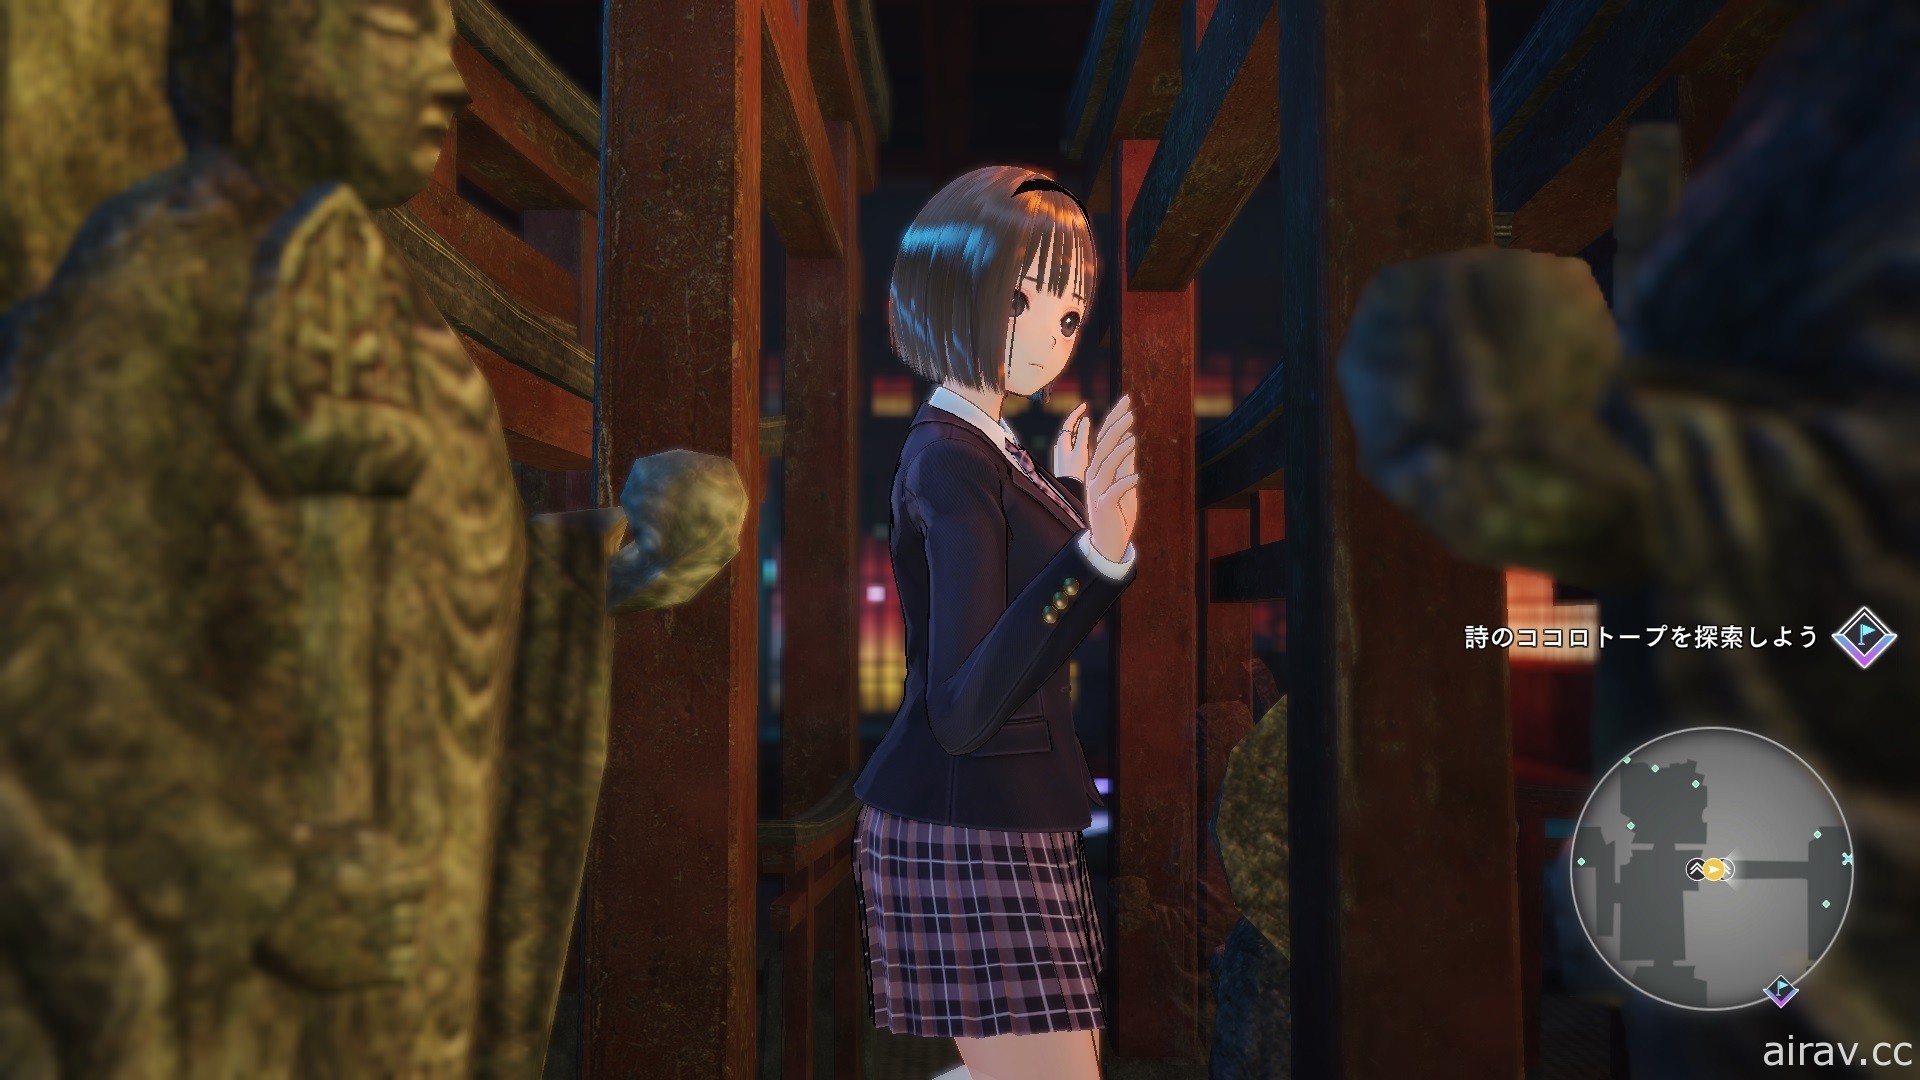 《BLUE REFLECTION: 帝》公开“驹川诗”“久野绮罗罗”角色介绍及各种系统情报